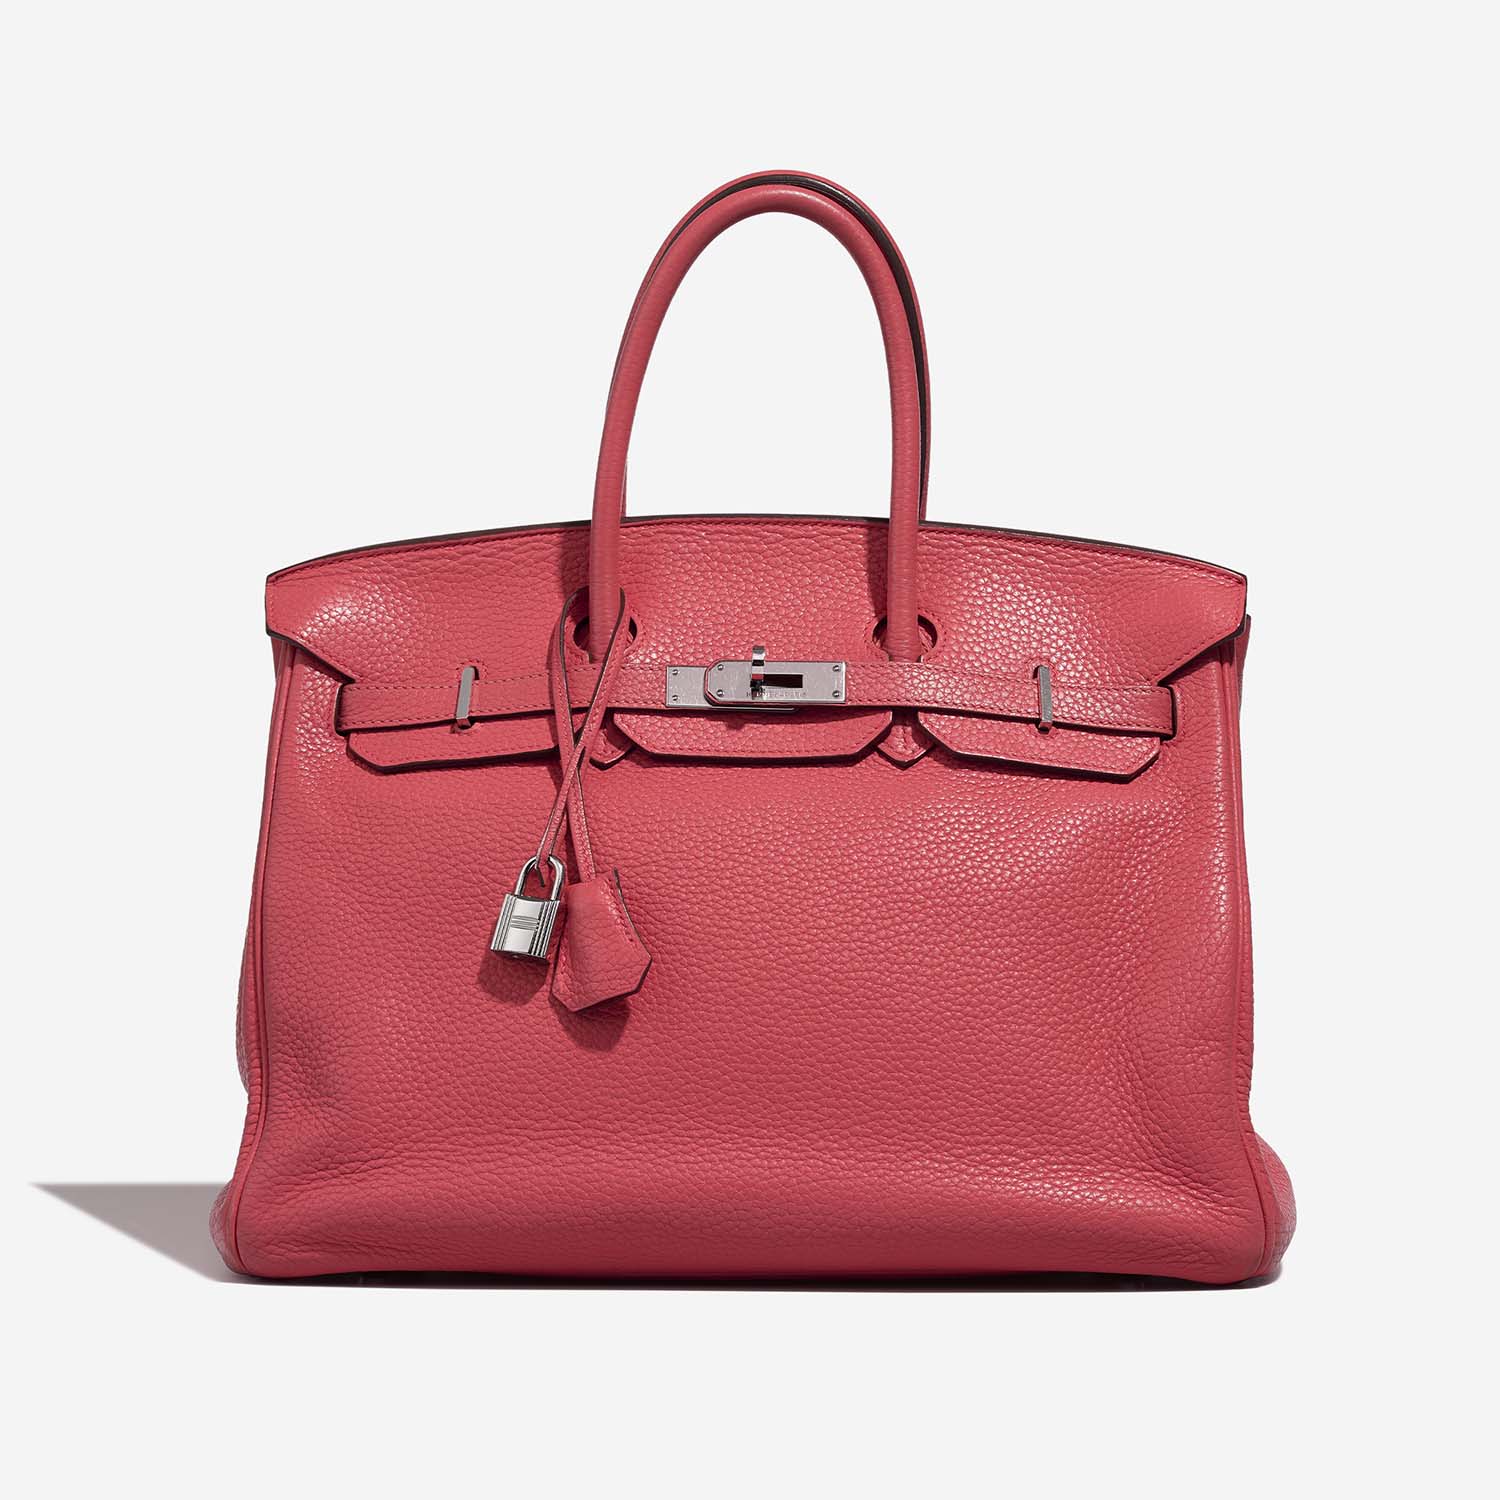 Hermès Birkin 35 RoseLipstick Front | Verkaufen Sie Ihre Designer-Tasche auf Saclab.com